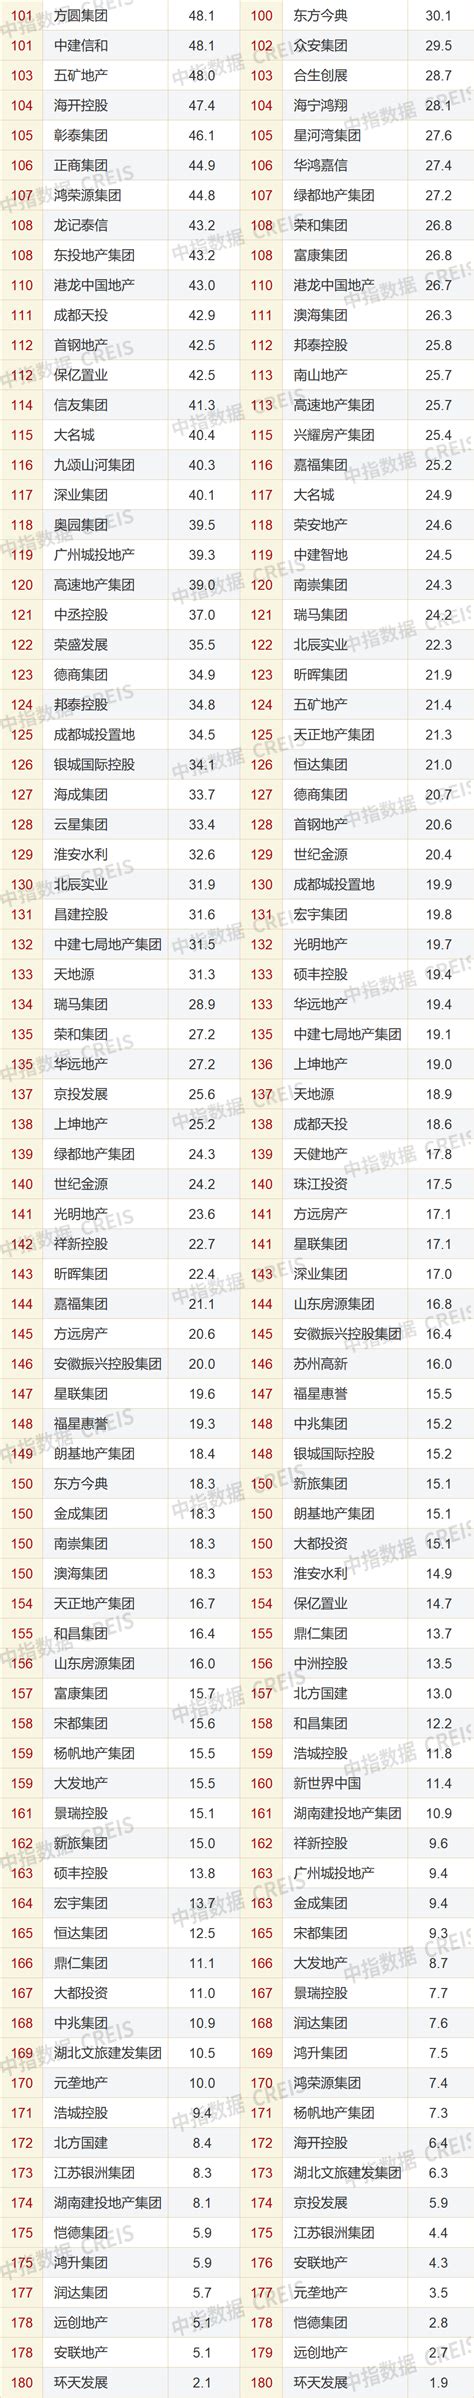 2019年地产销售排行_2019年广西各市房地产销售排行榜(3)_排行榜